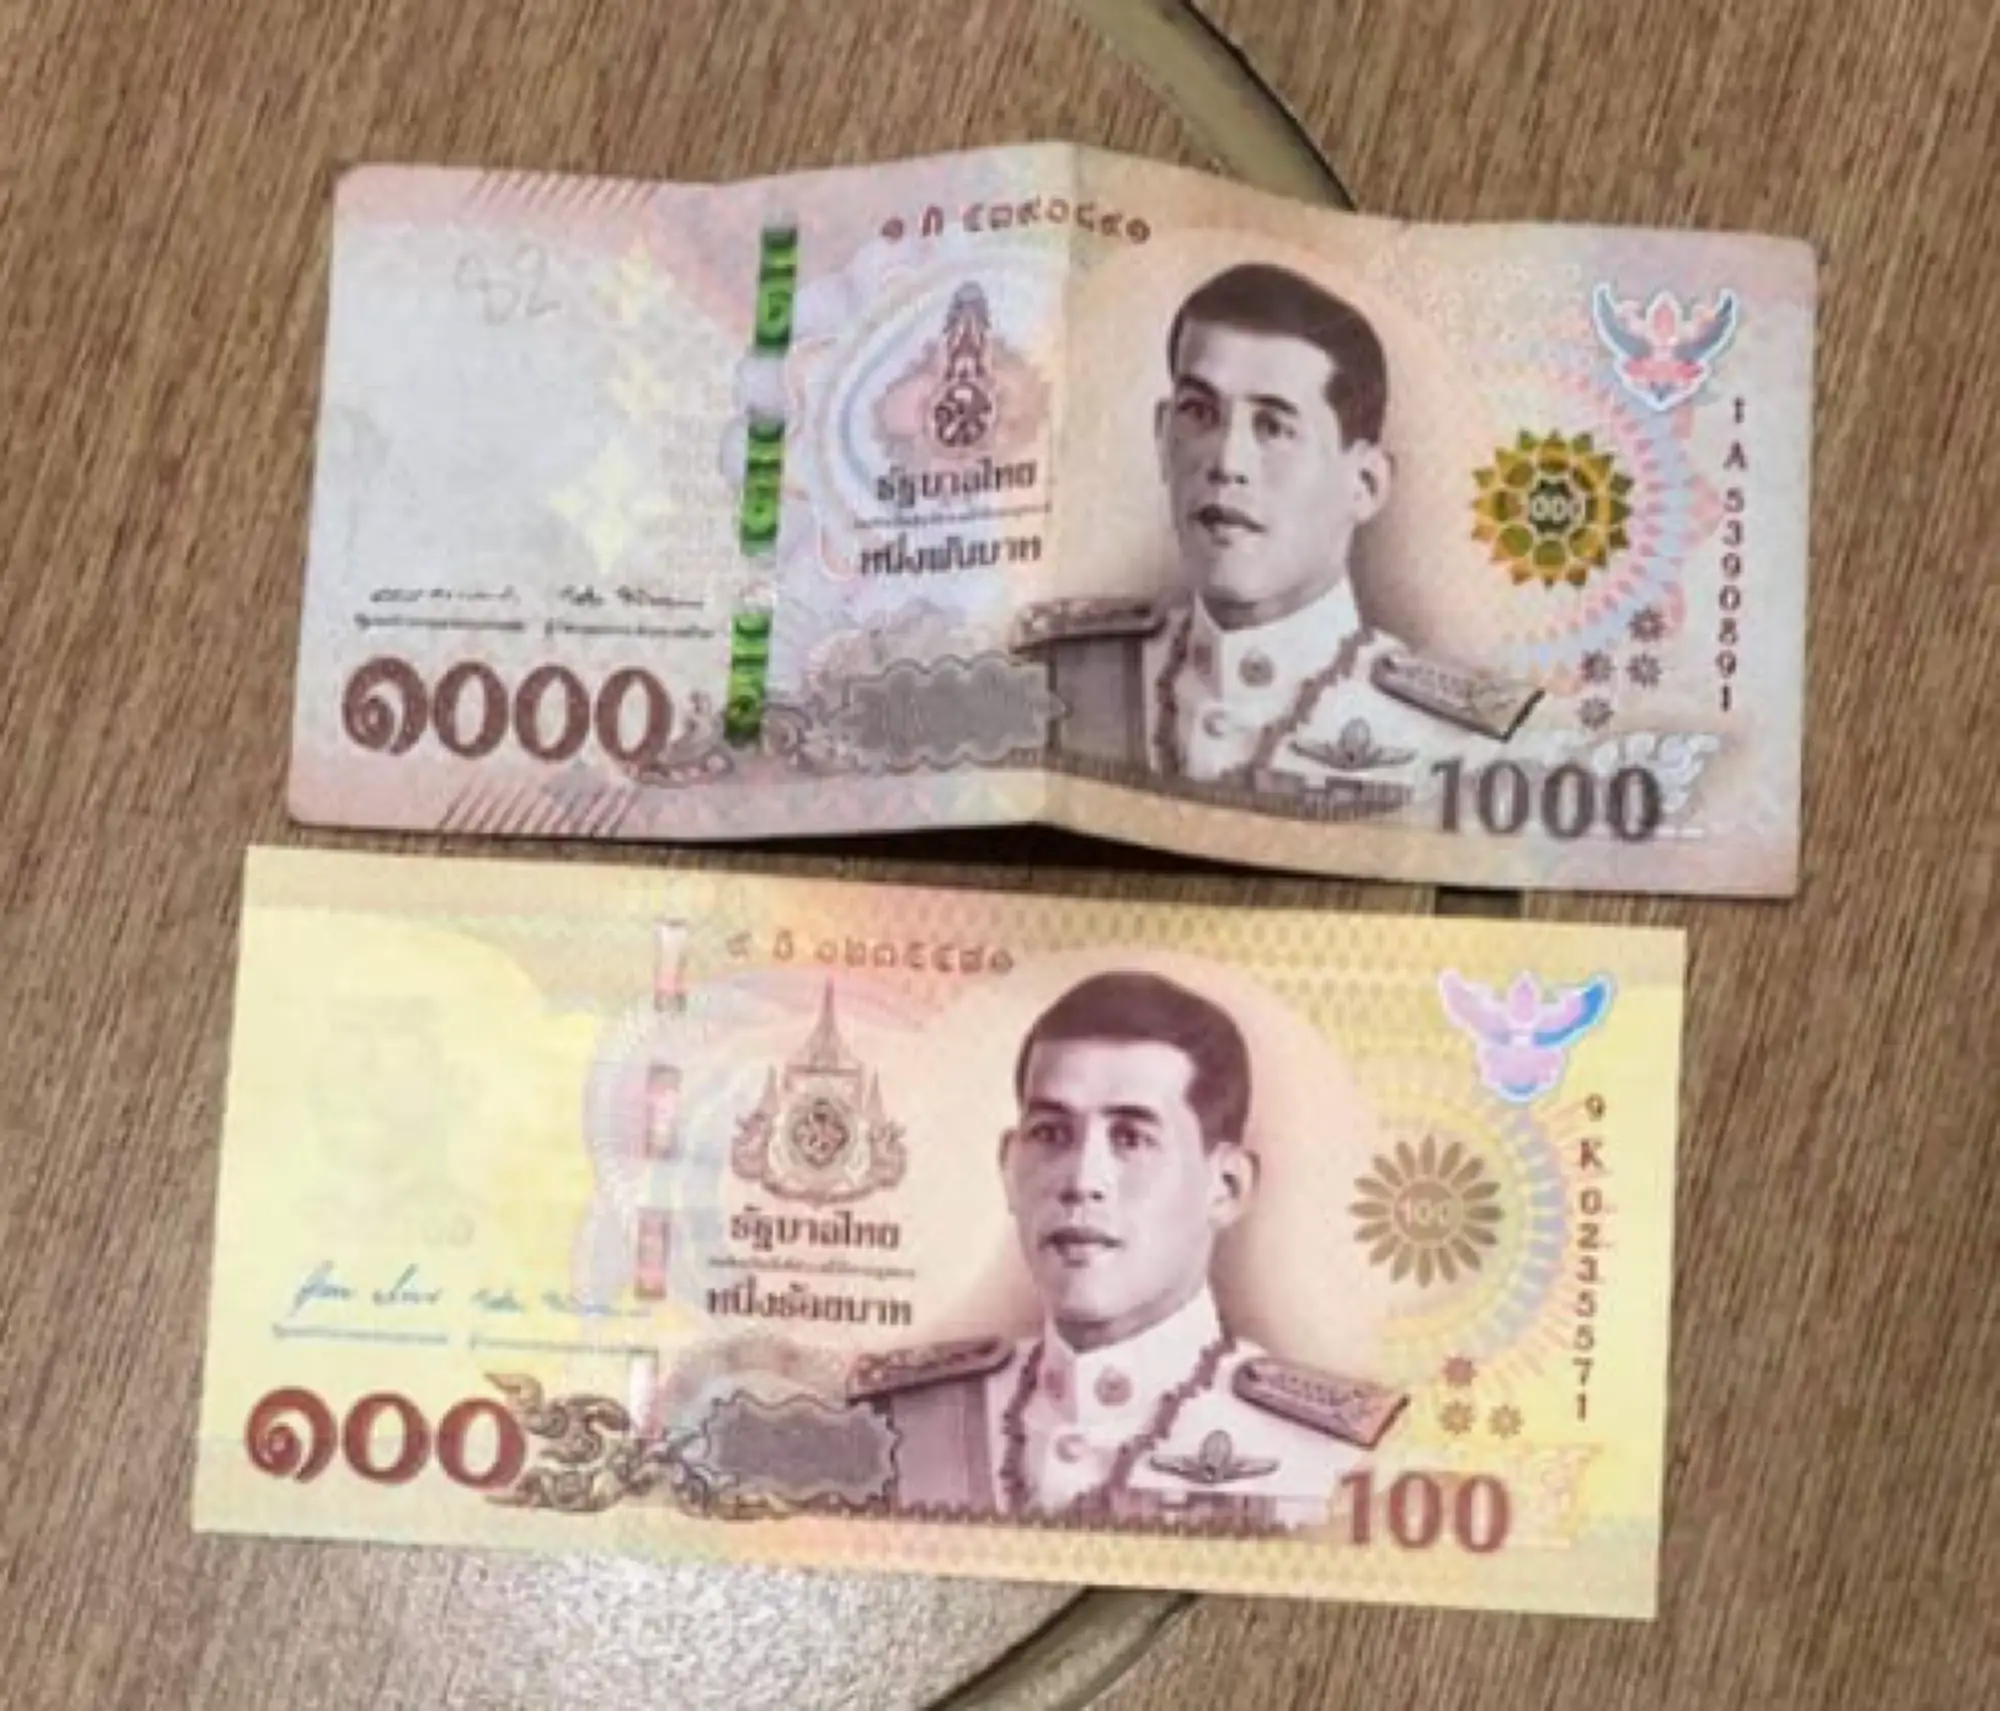 如果不稍加注意的話，新版的100泰銖紀念紙幣看起來與舊版的1000泰銖紙幣十分相似（圖片來源：臉書粉專 Drama-addict）